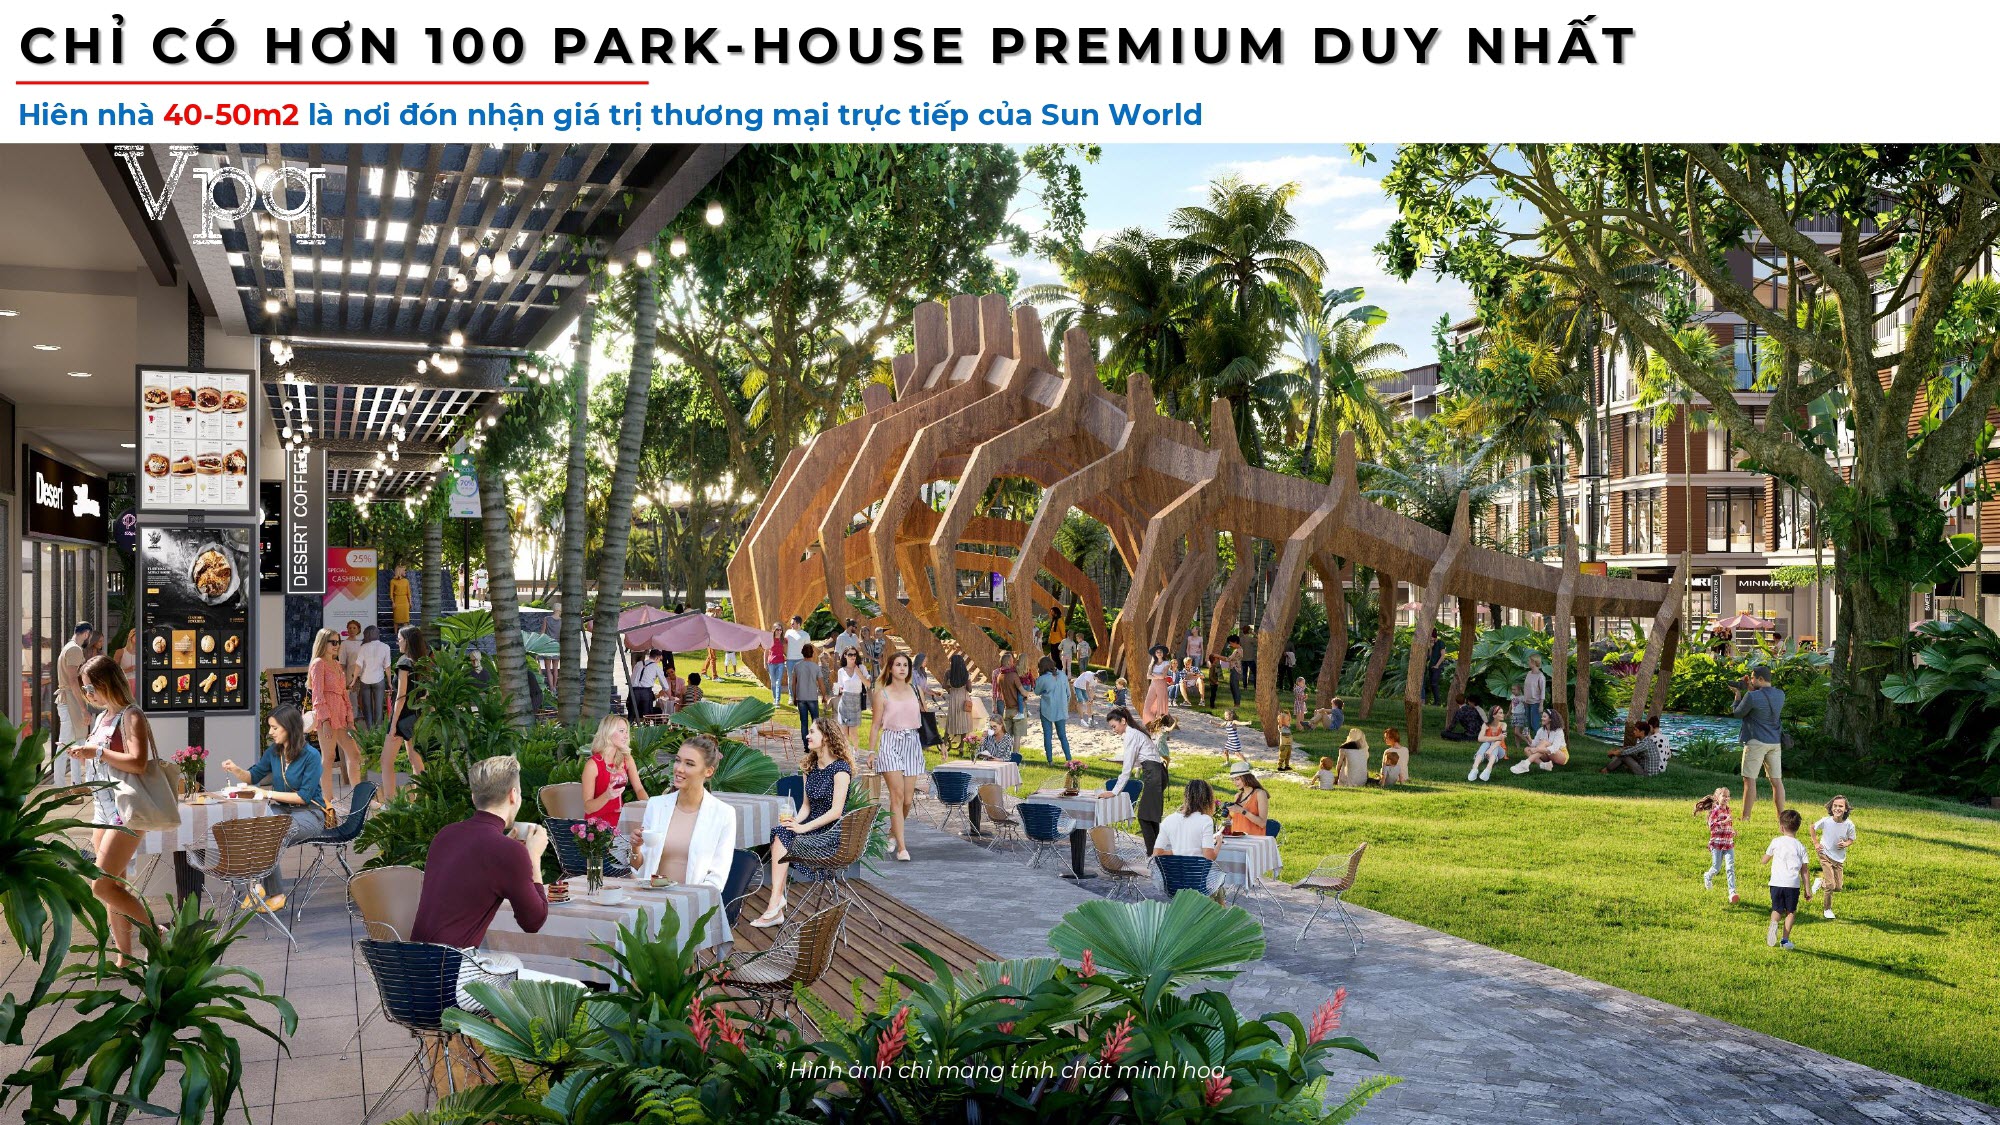 Thiết kế lối dạo bộ của Park-House Premium